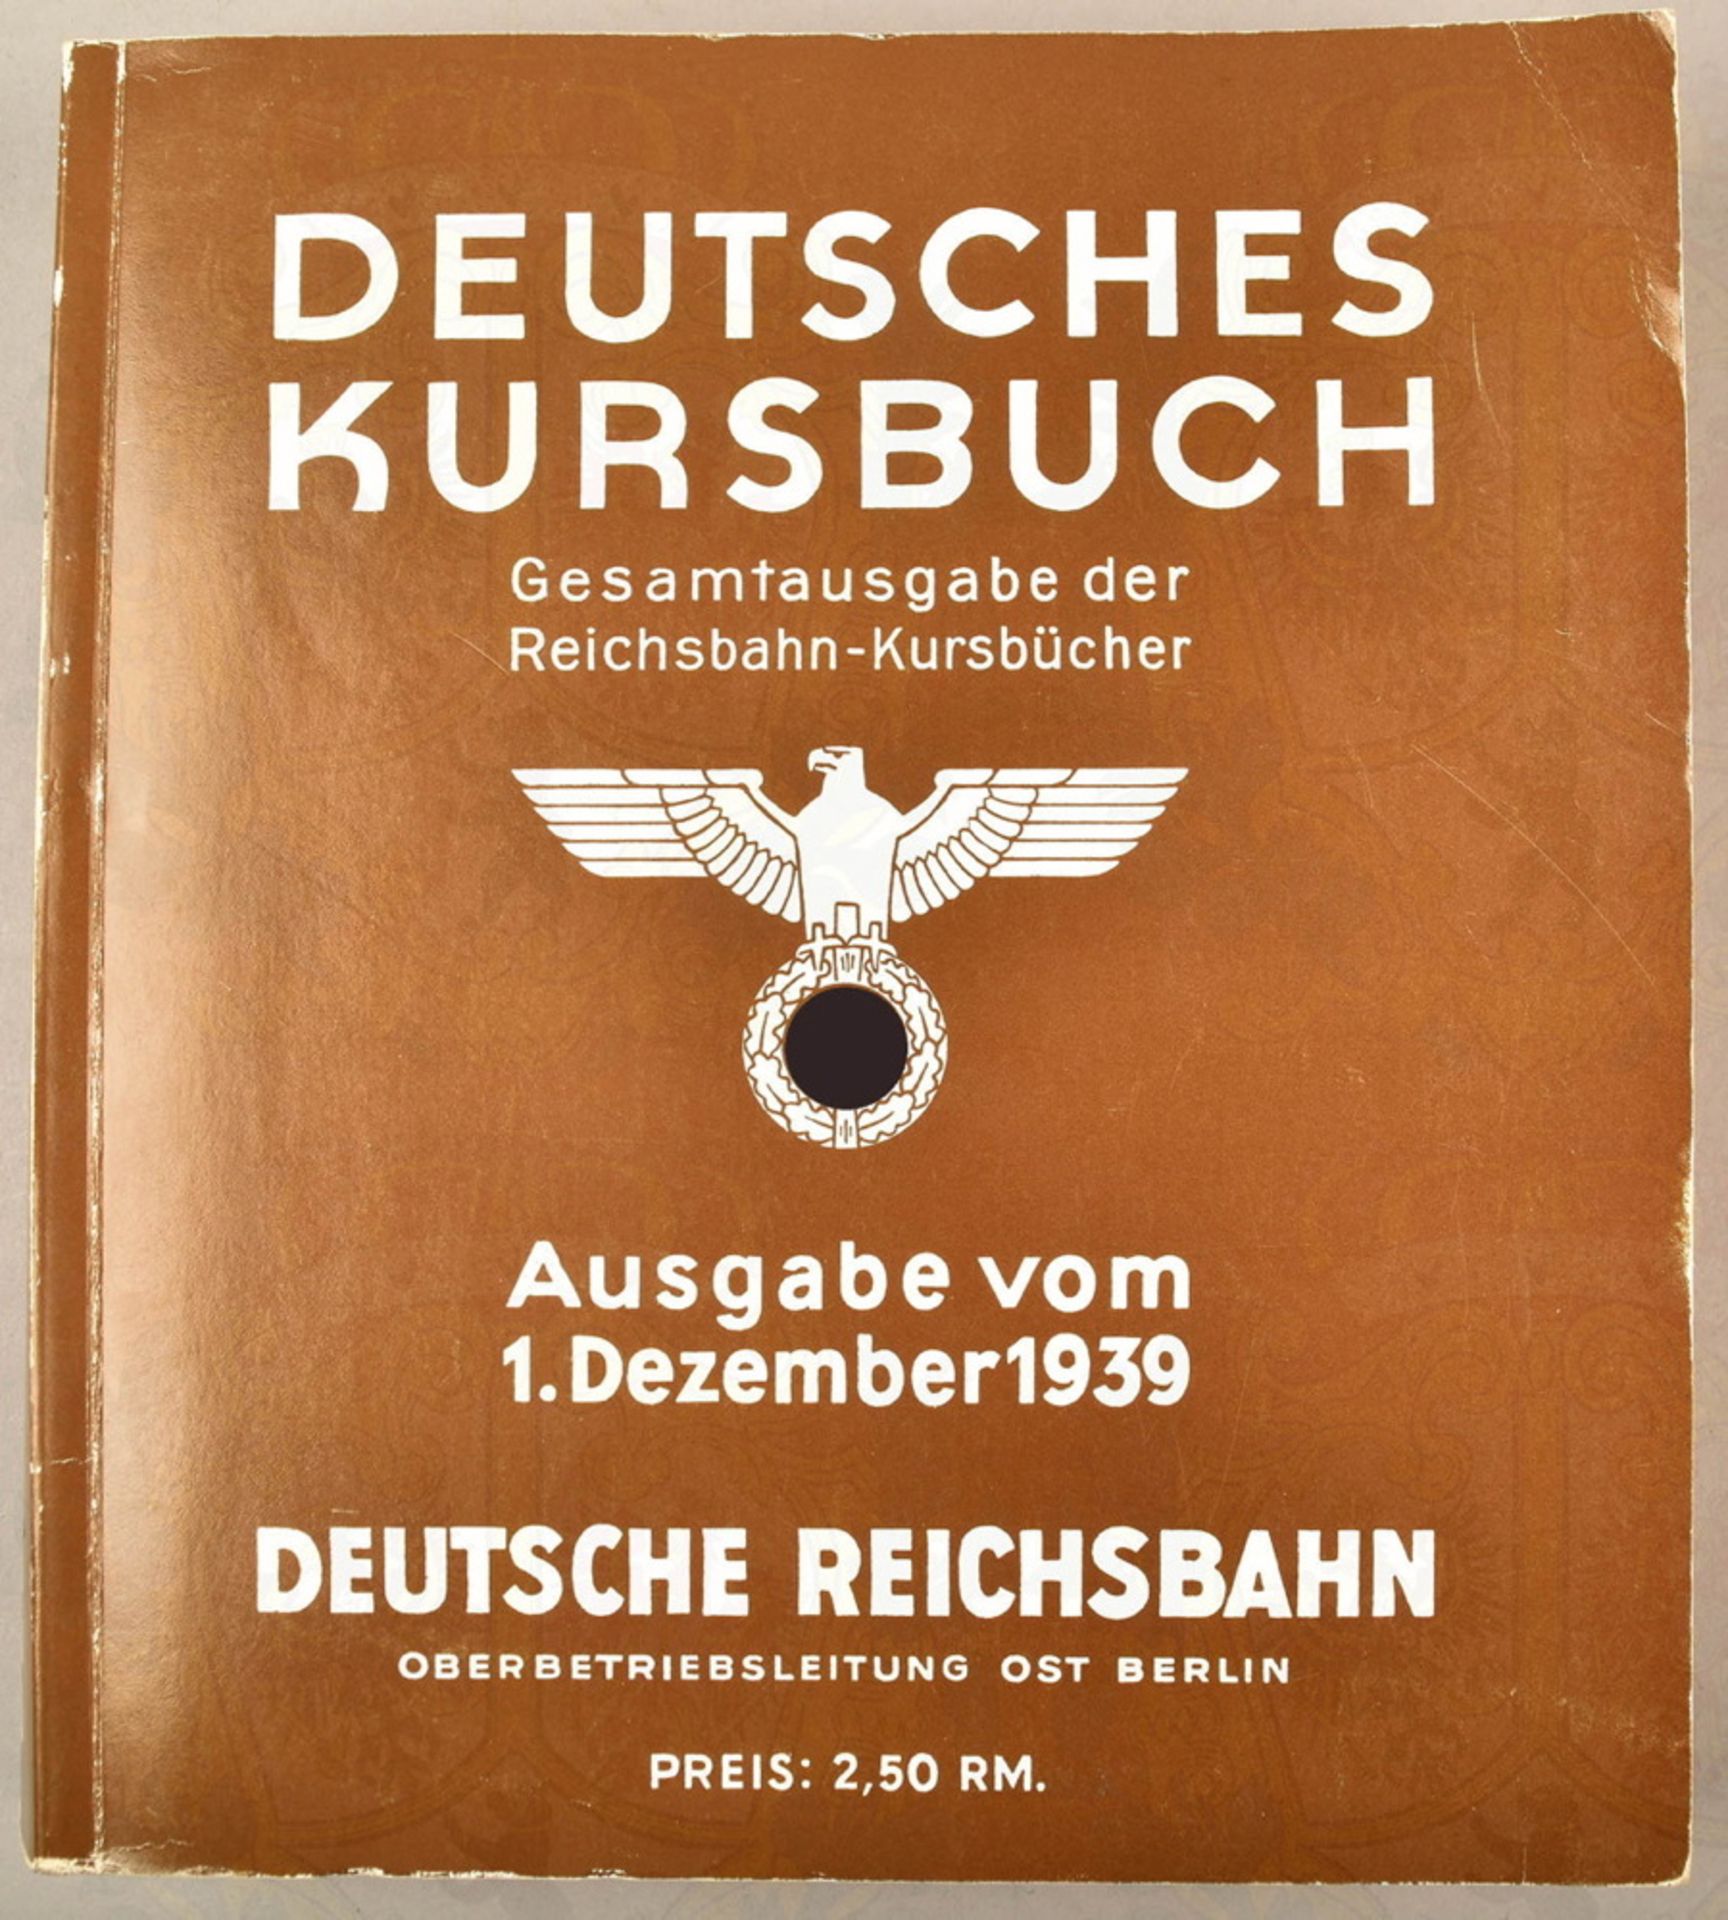 Deutsches Reichsbahn-Kursbuch Ausgabe 1. Dezember 1939